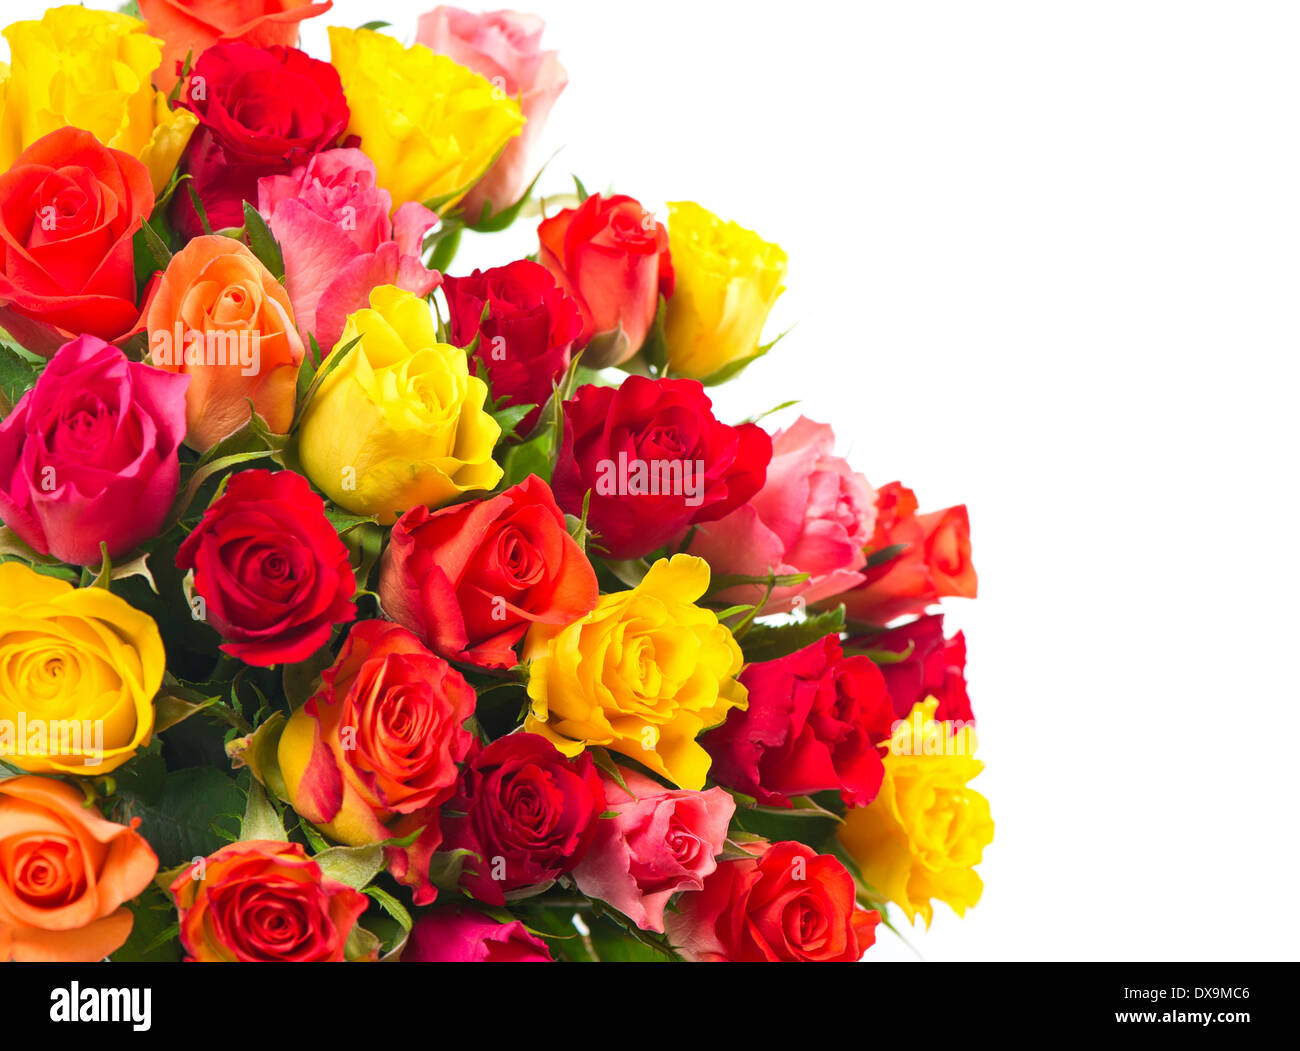 Nếu bạn đang tìm kiếm một bó hoa tuyệt đẹp với các loại hoa đầu mùa như hồng, đỏ, vàng và cam, thì đây chính là lựa chọn hoàn hảo. Bó hoa này được thiết kế tinh tế và đẹp mắt, hoàn toàn phù hợp để tặng cho những người thân yêu như một món quà ý nghĩa và đầy tình cảm.